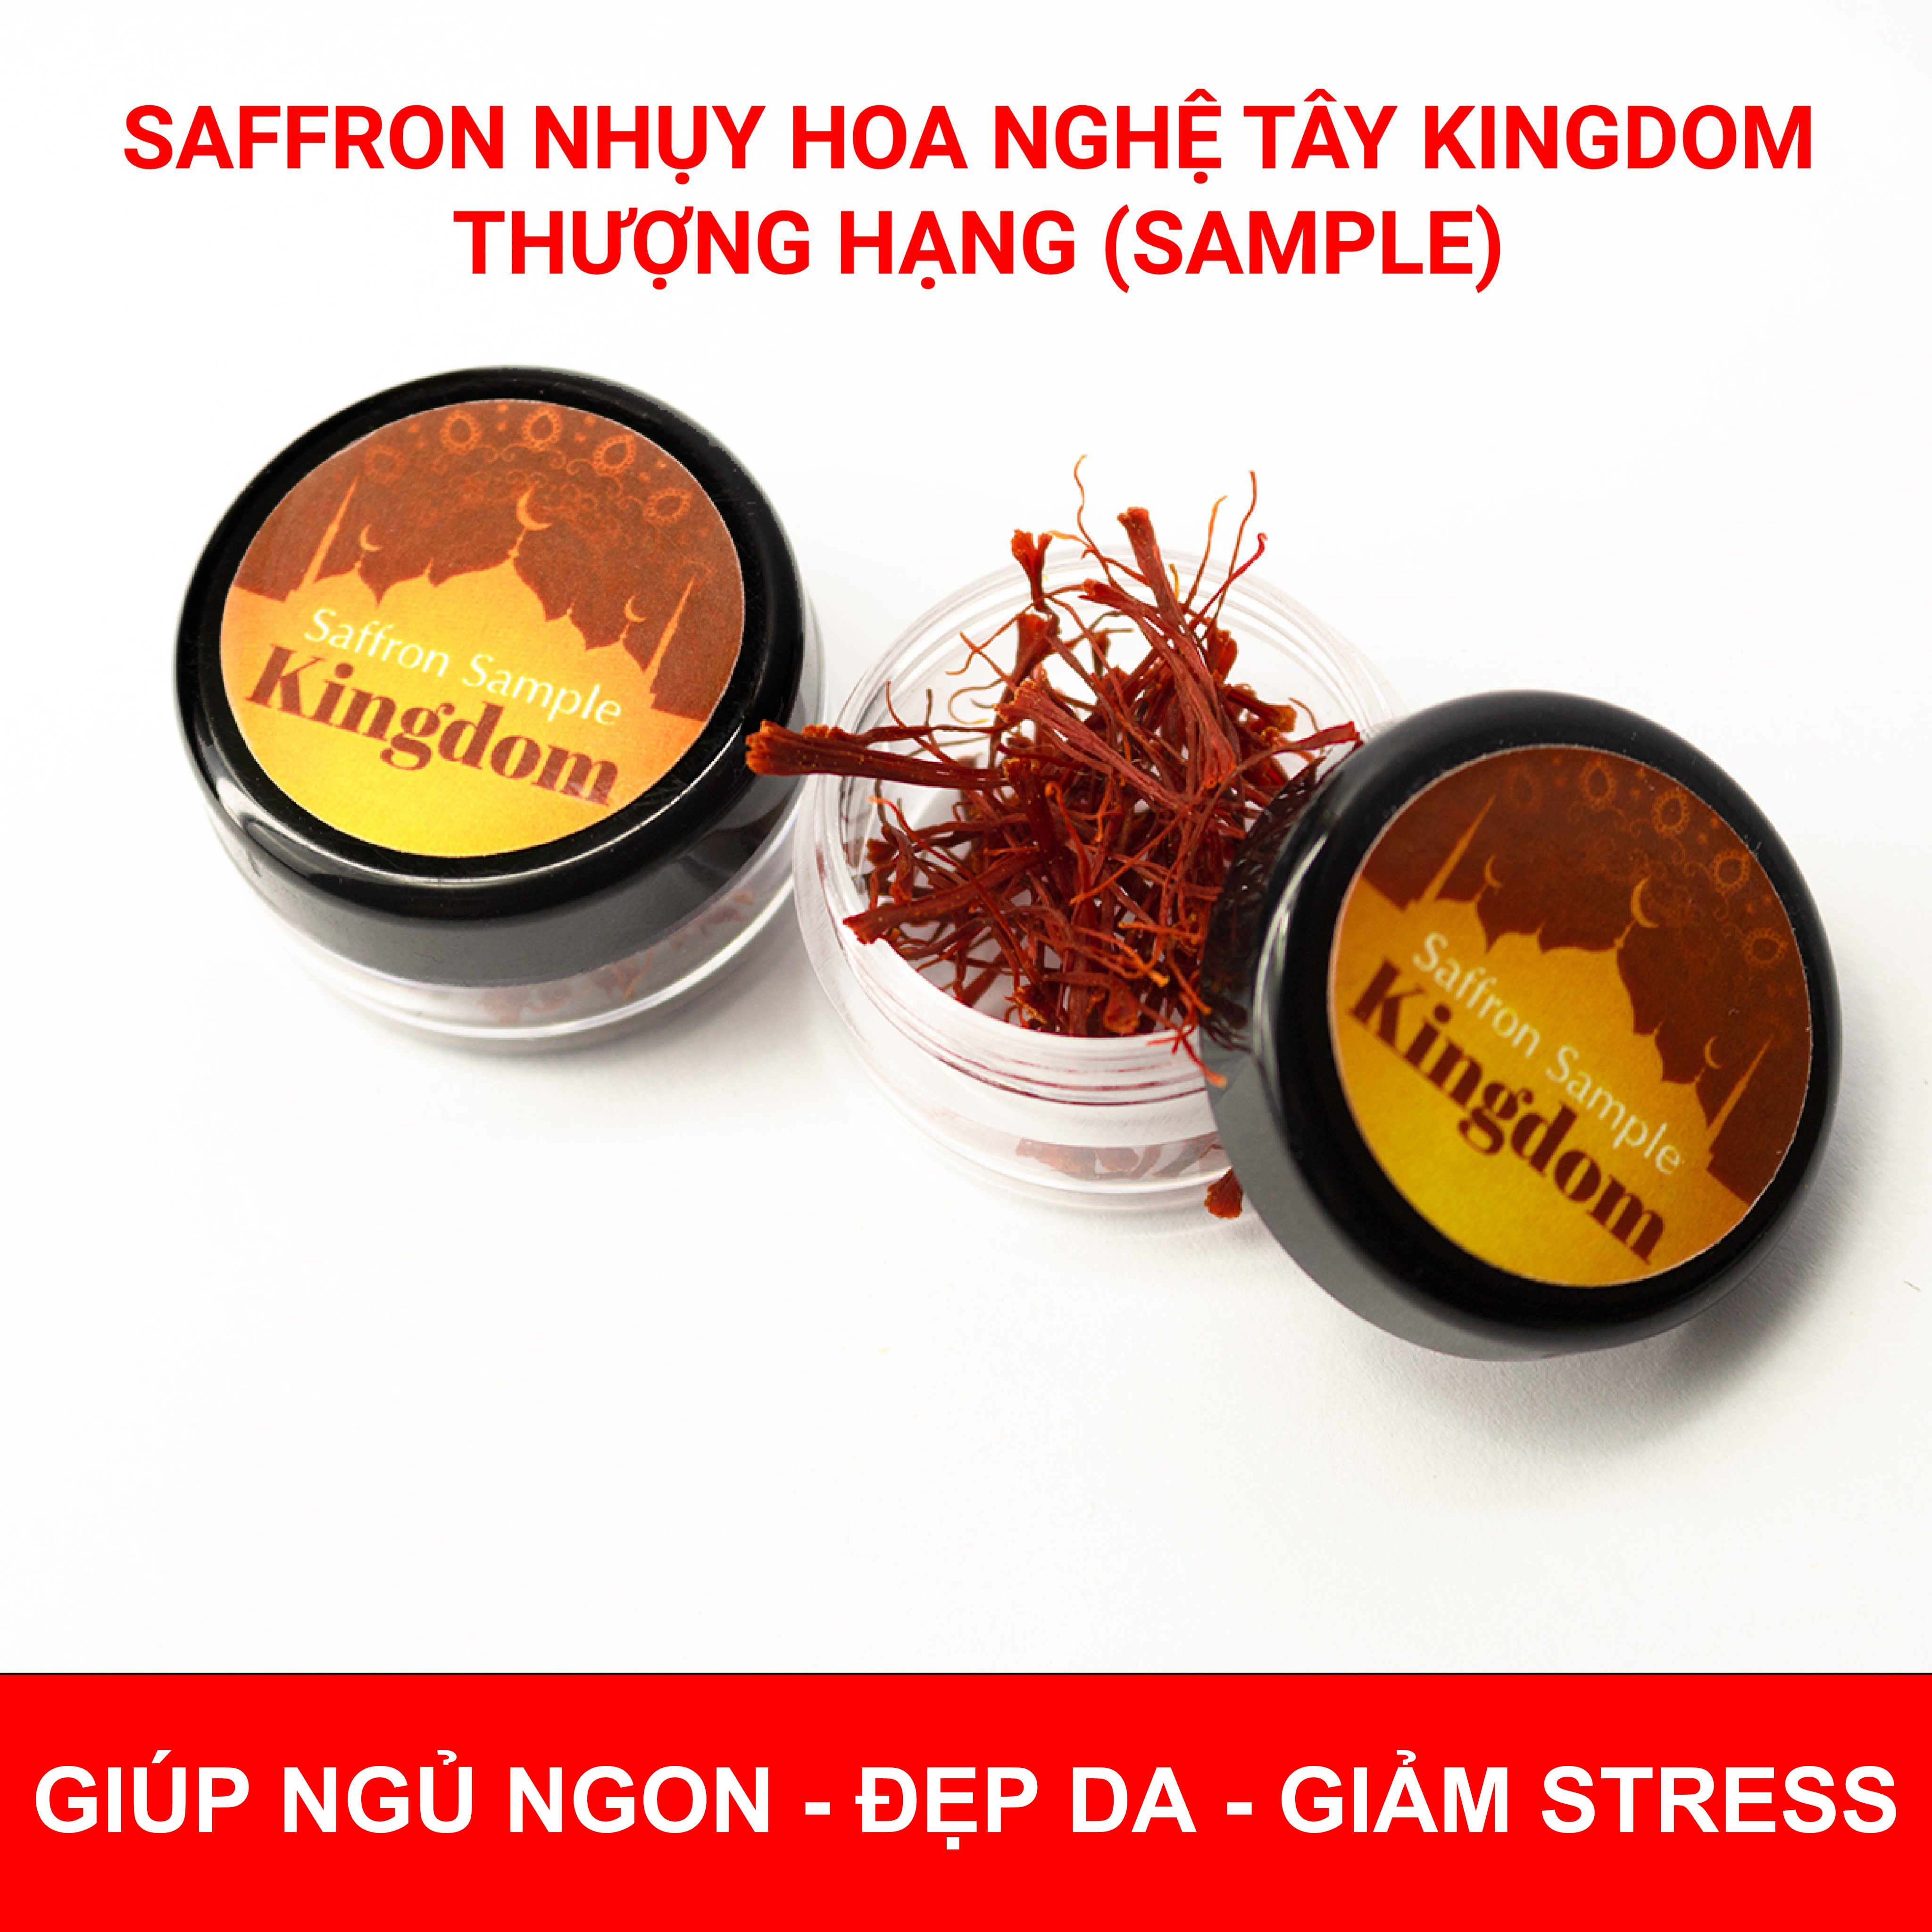 Saffron nhụy hoa nghệ tây Kingdom Iran loại Super Negin thượng hạng hộp 0.1 gram (mẫu thử) 1